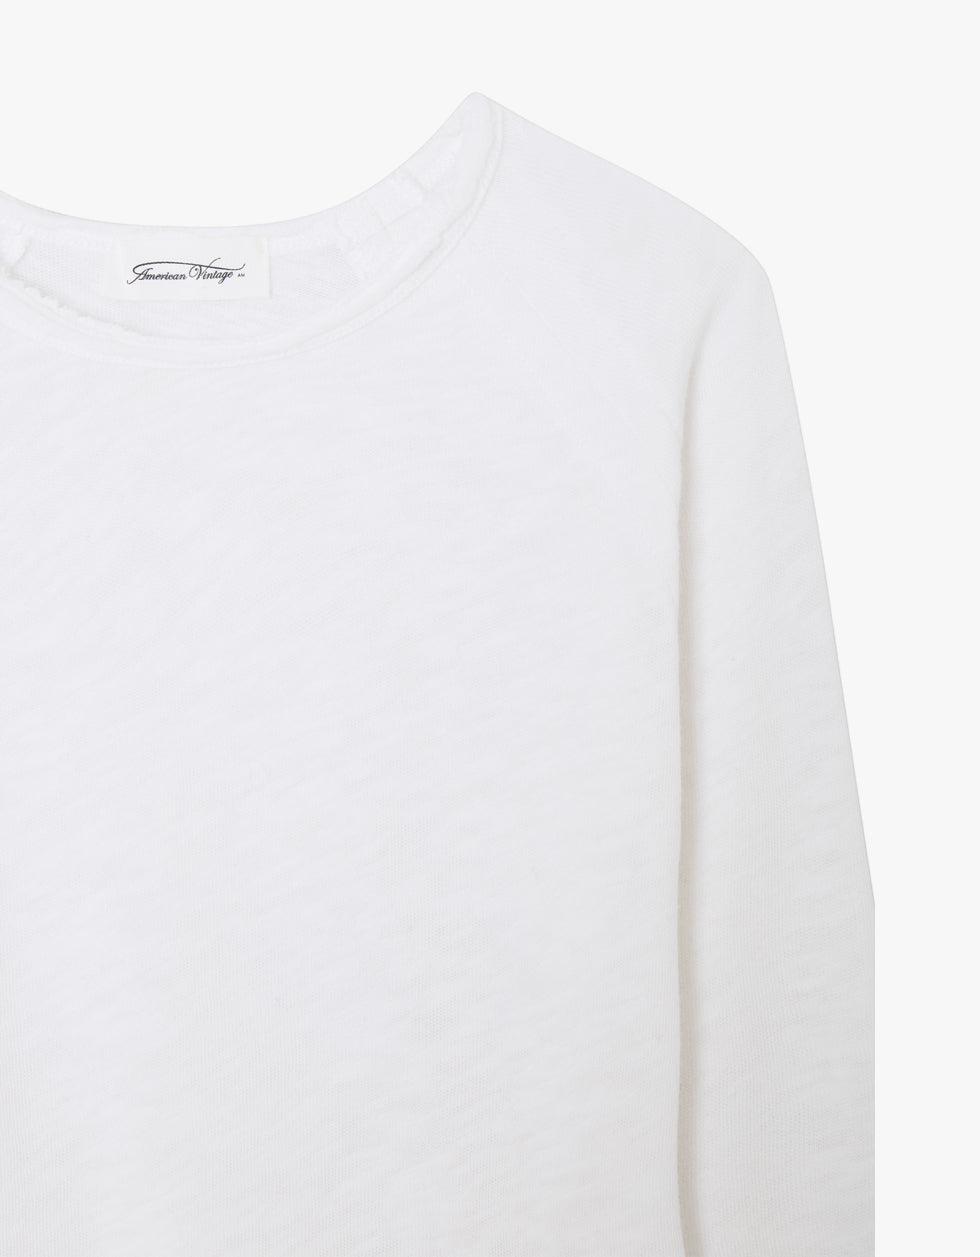 Sonoma T-shirt | White